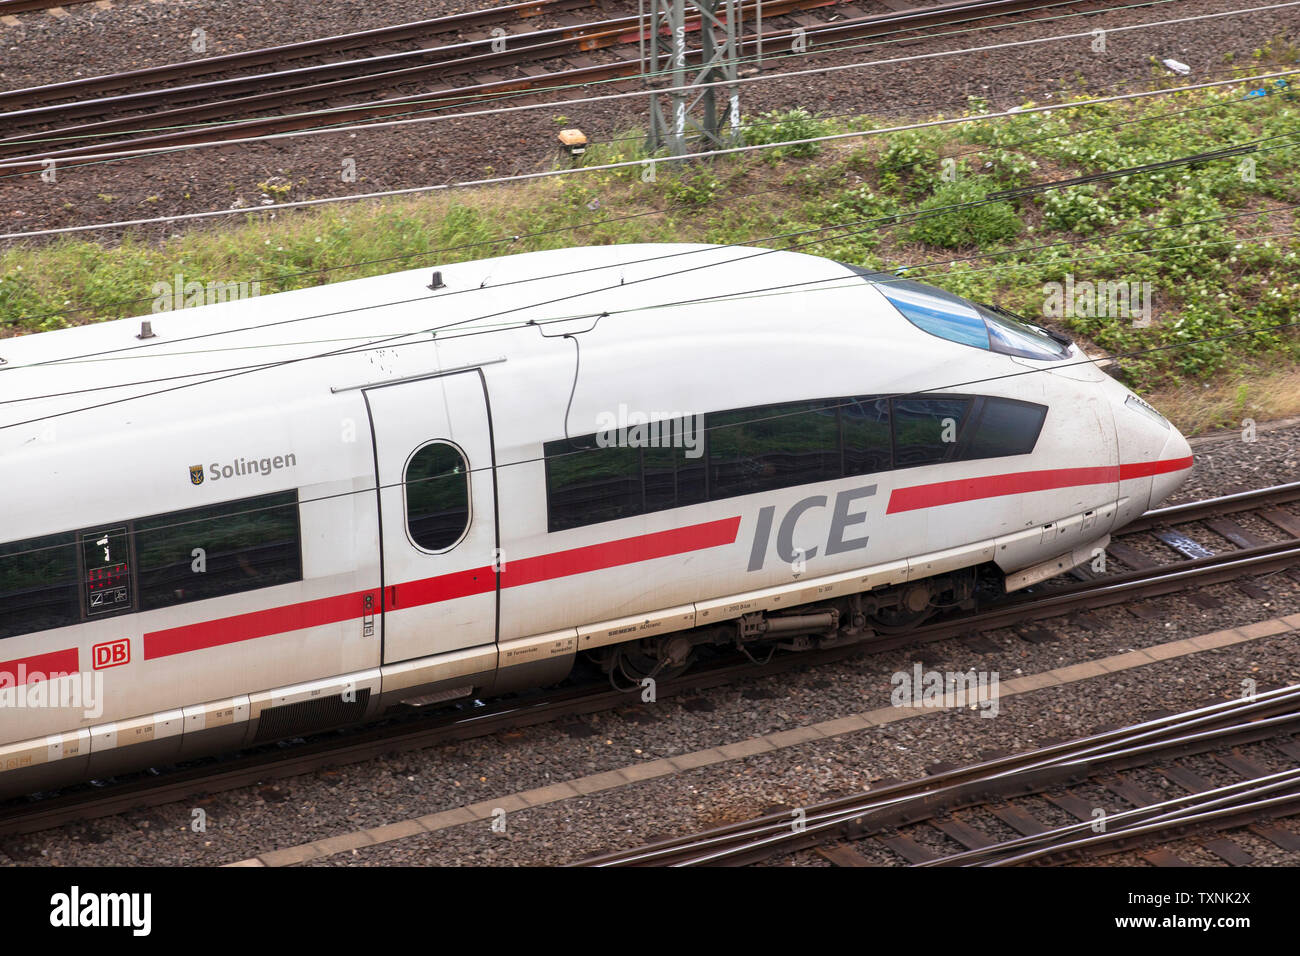 high-speed train ICE in the town district Deutz, Cologne, Germany.  Hochgeschwindigkeitszug ICE im Stadtteil Deutz, Koeln, Deutschland. Stock Photo